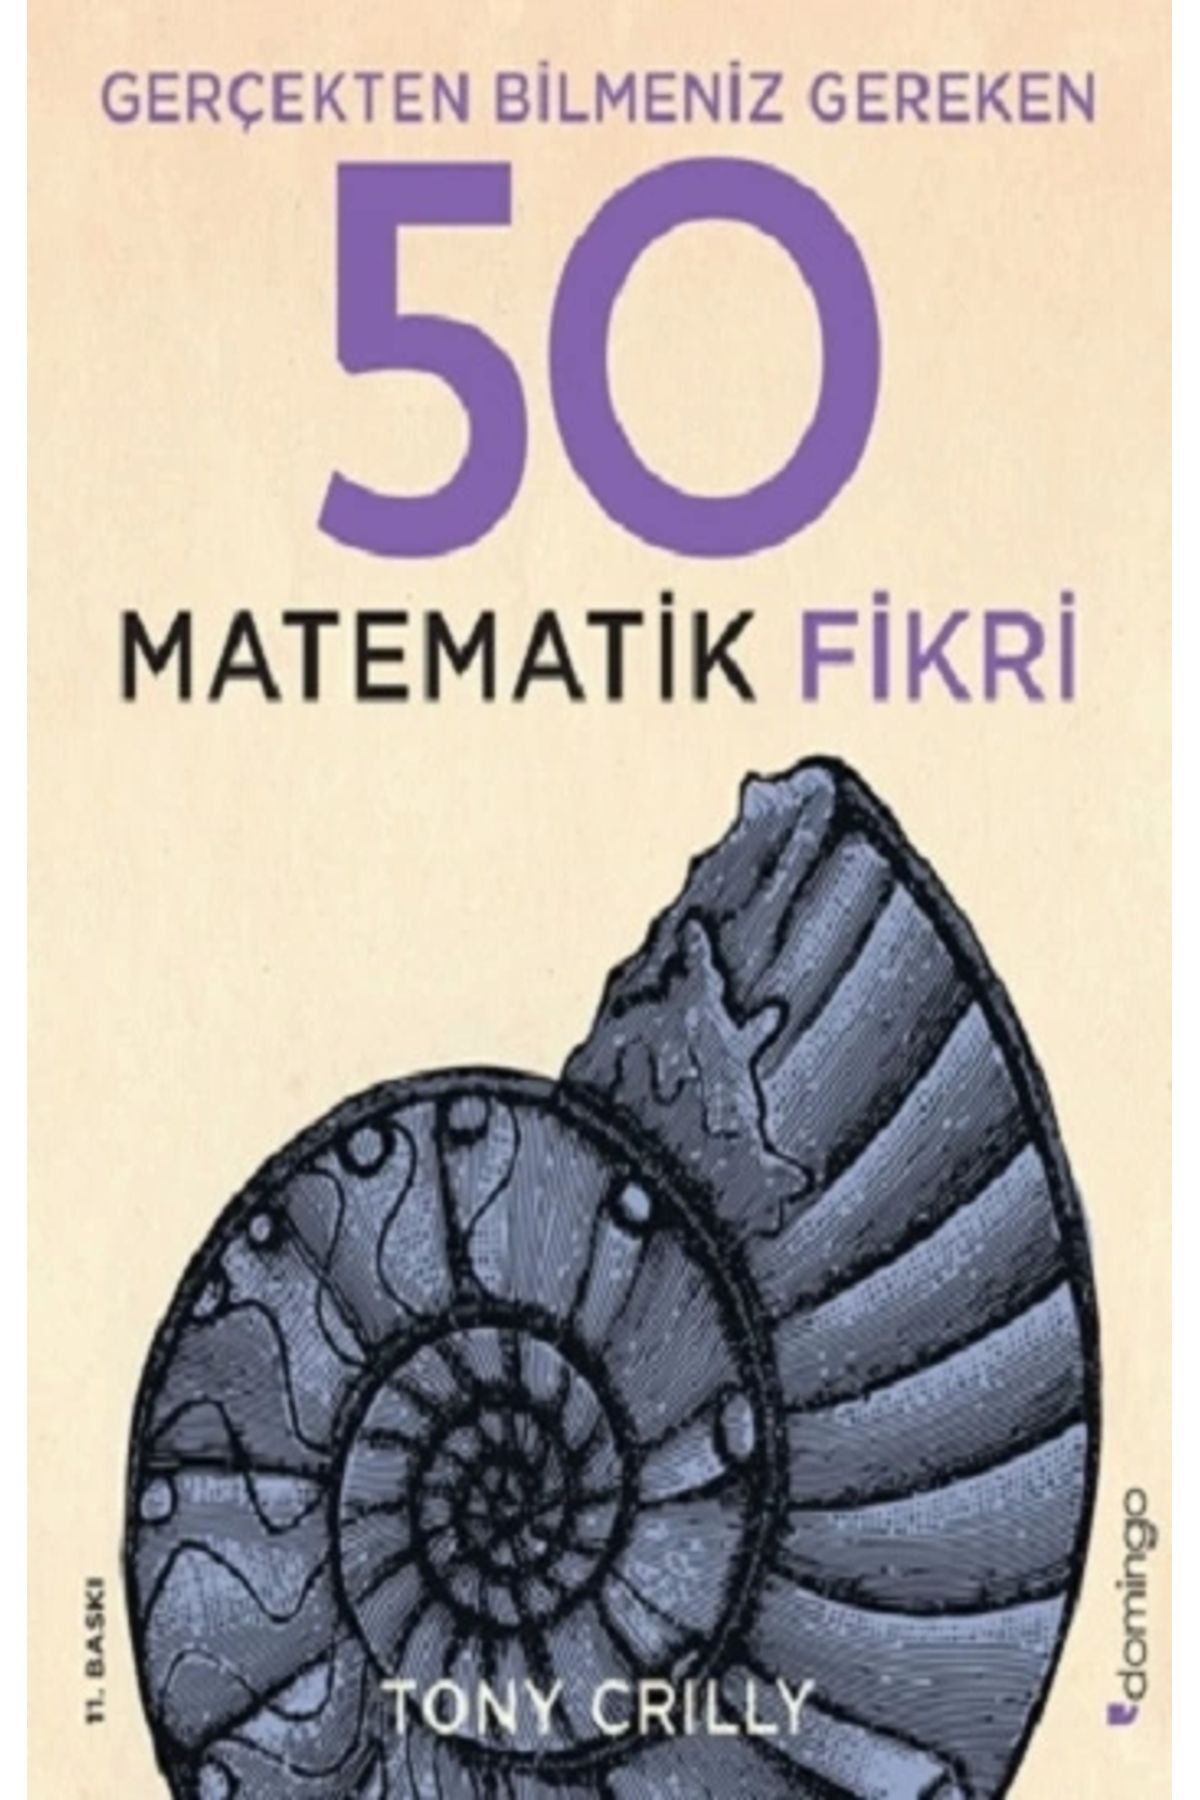 Domingo Yayınevi Gerçekten Bilmeniz Gereken 50 Matematik Fikri (ciltli)